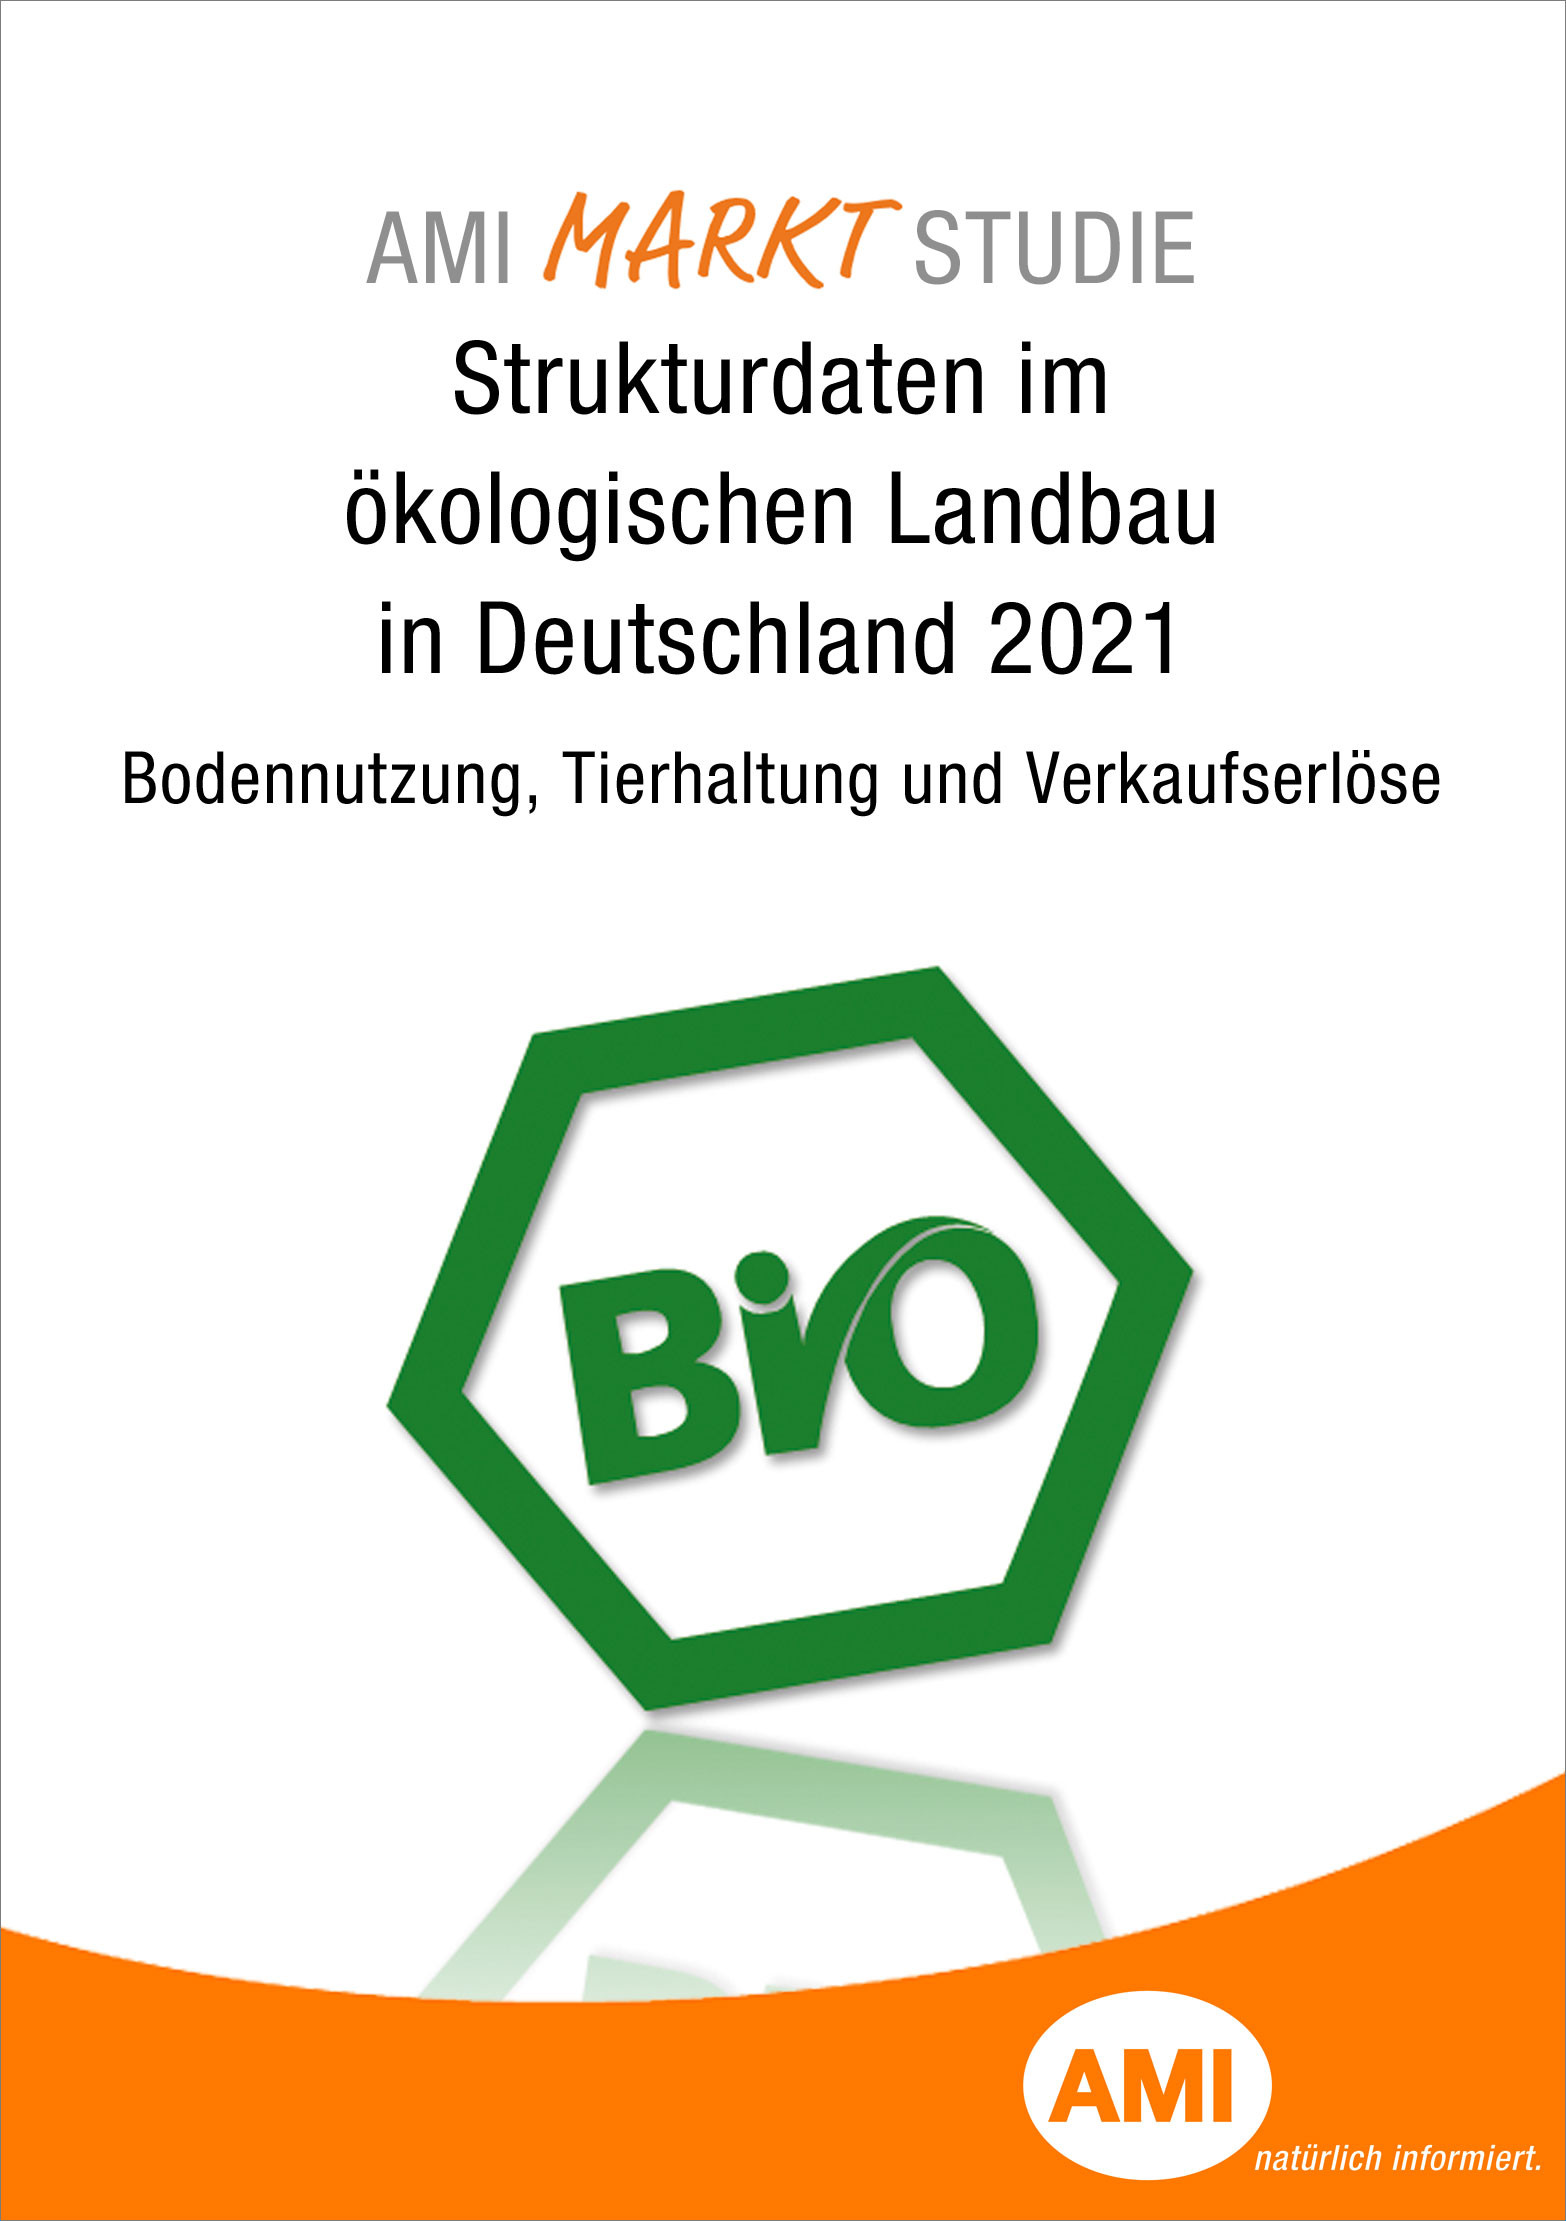 2021_Titel_Markt_Studie_Strukturdaten_im_oekologischen_Landbau_in_Deutschland.jpg